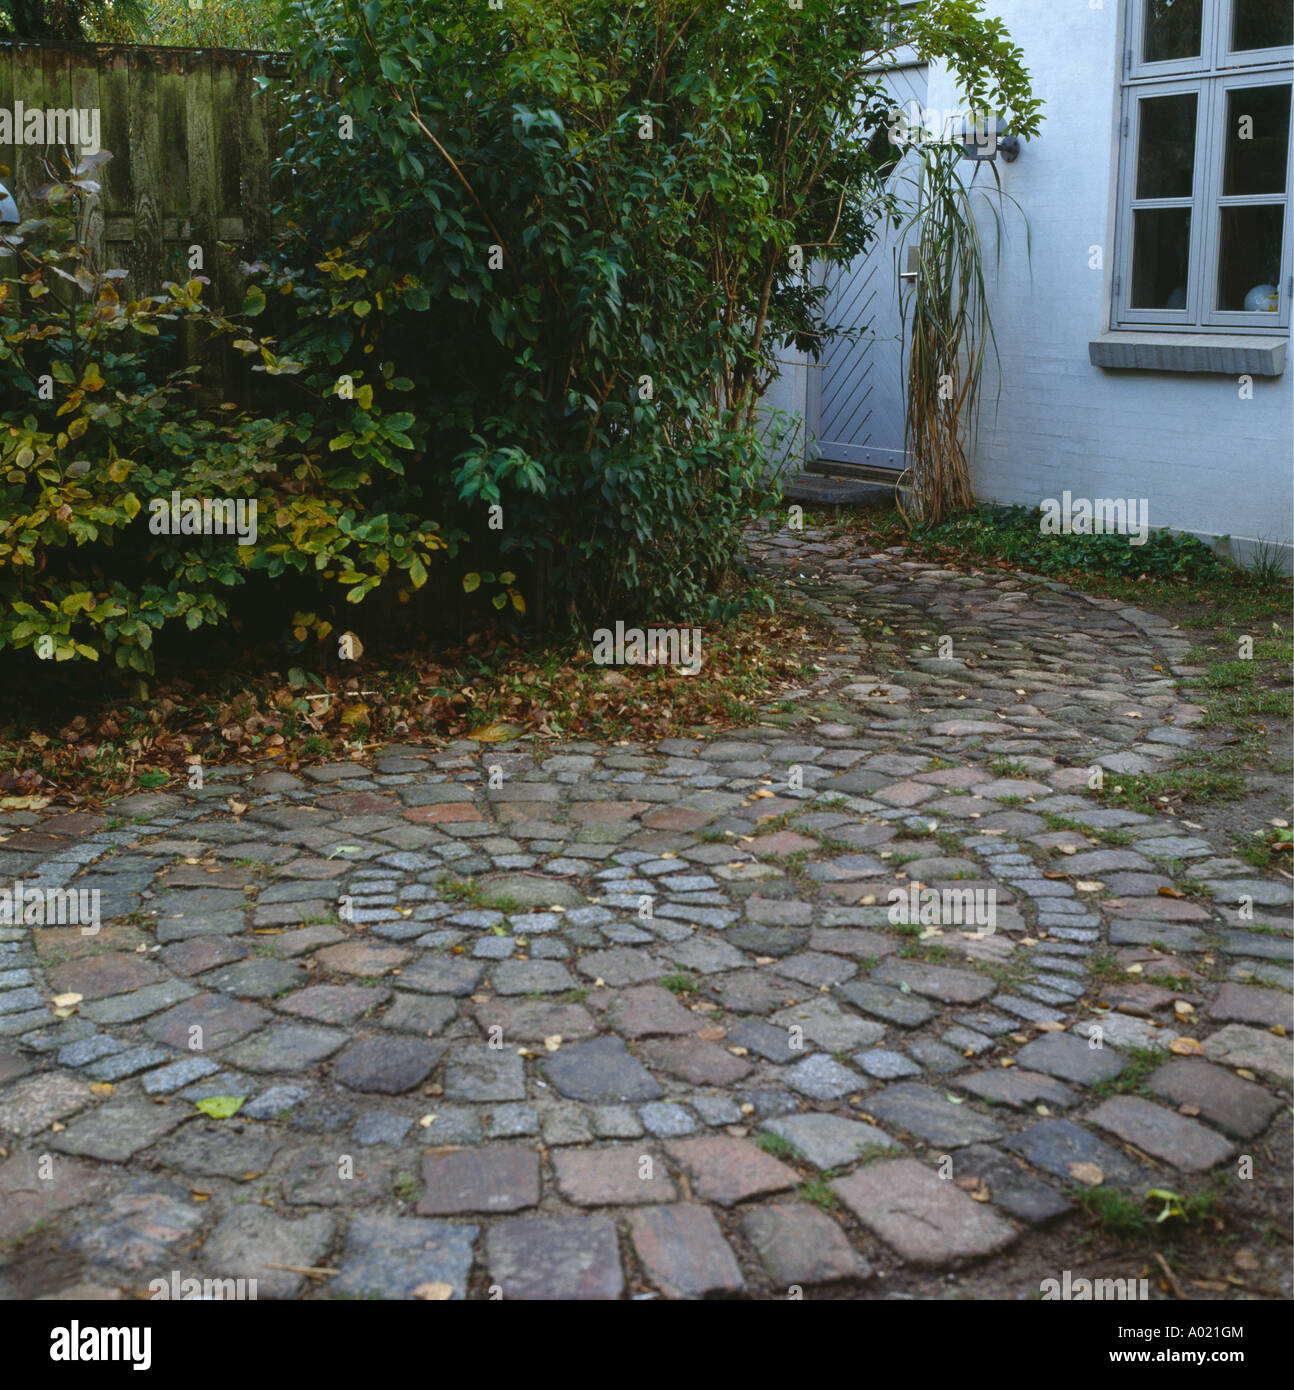 Kreisförmige Pflastersteine im kleinen Innenhof Stockfotografie - Alamy